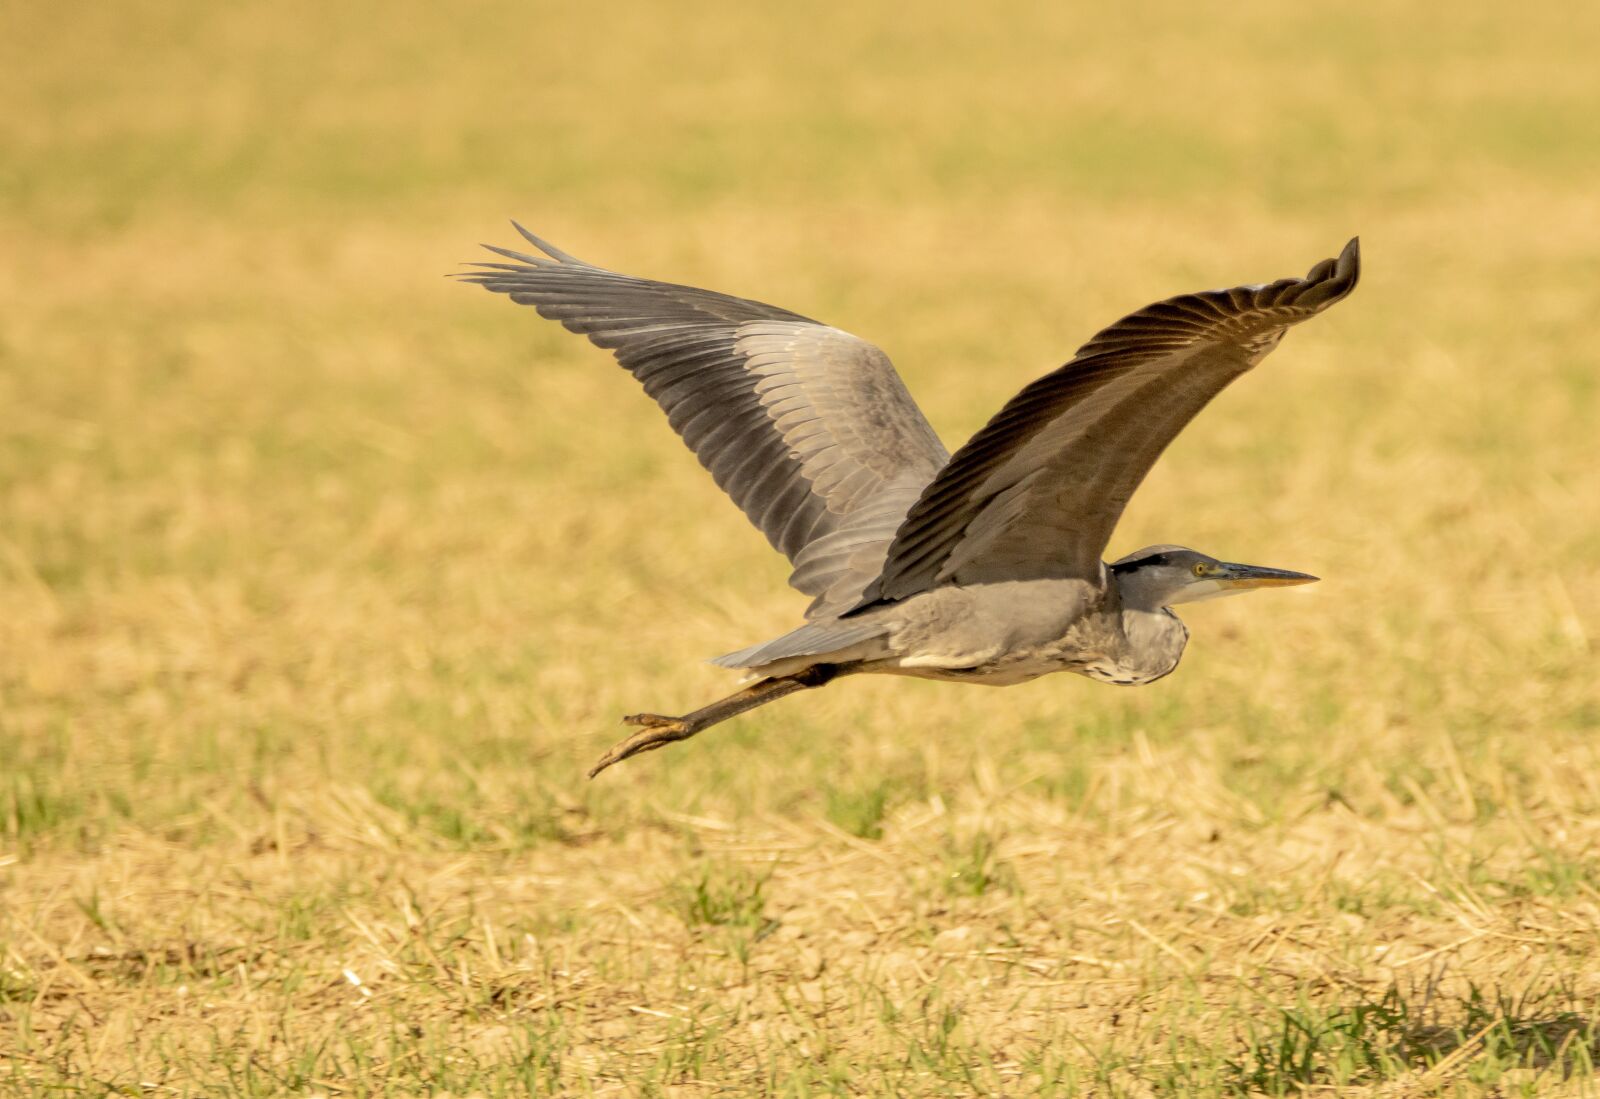 Canon EOS 90D sample photo. Grey heron, bird, flight photography